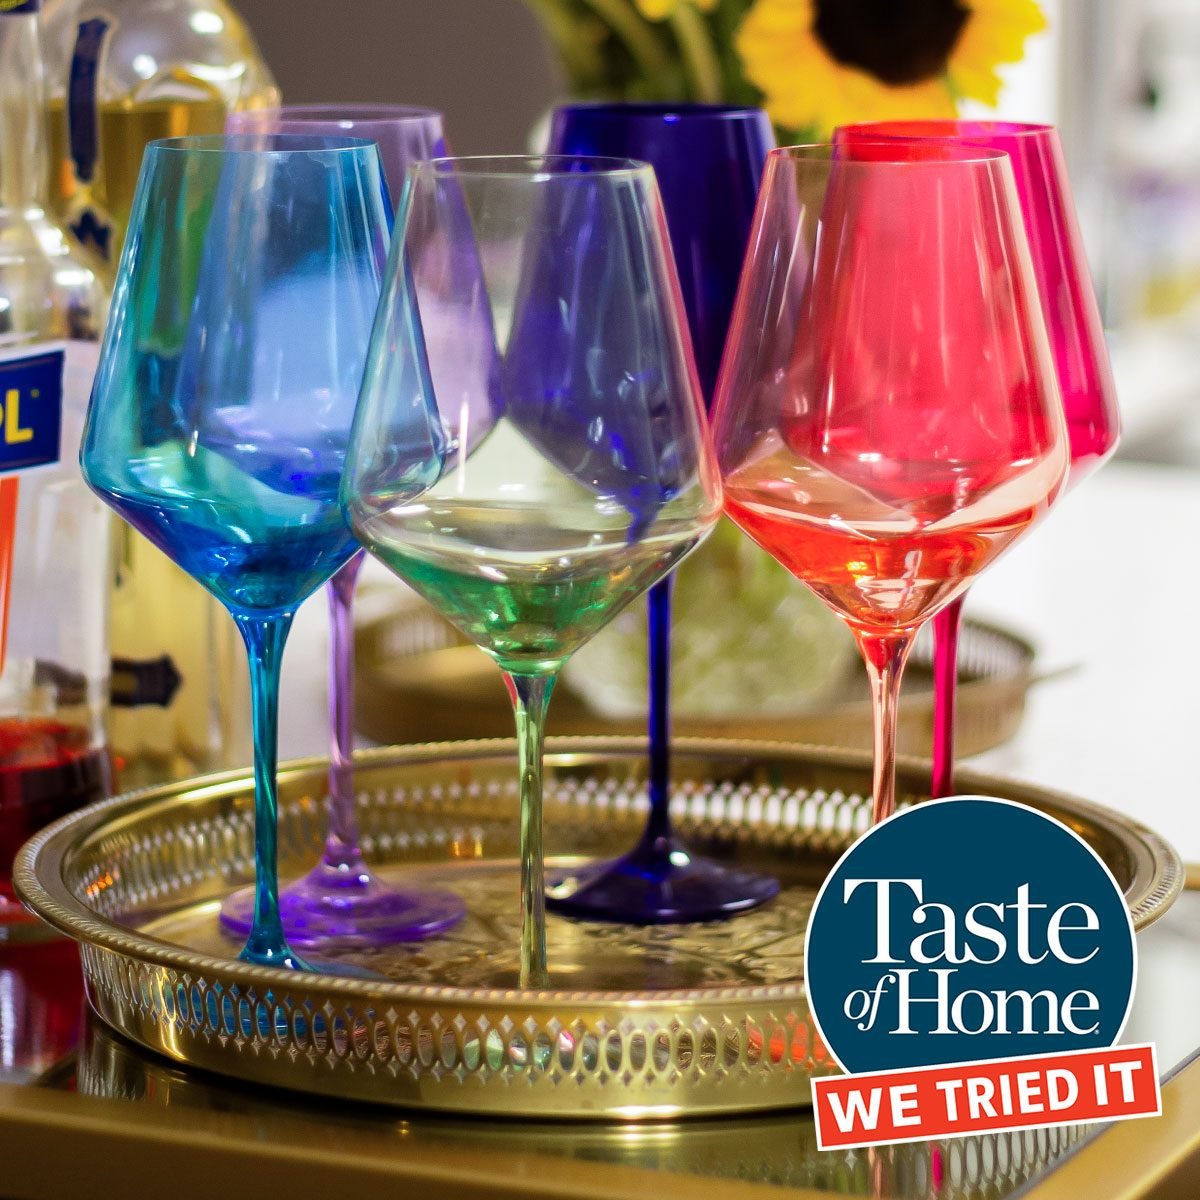 Estelle Colored Wine Stemware - Set of 6 {Red} – Estelle Colored Glass